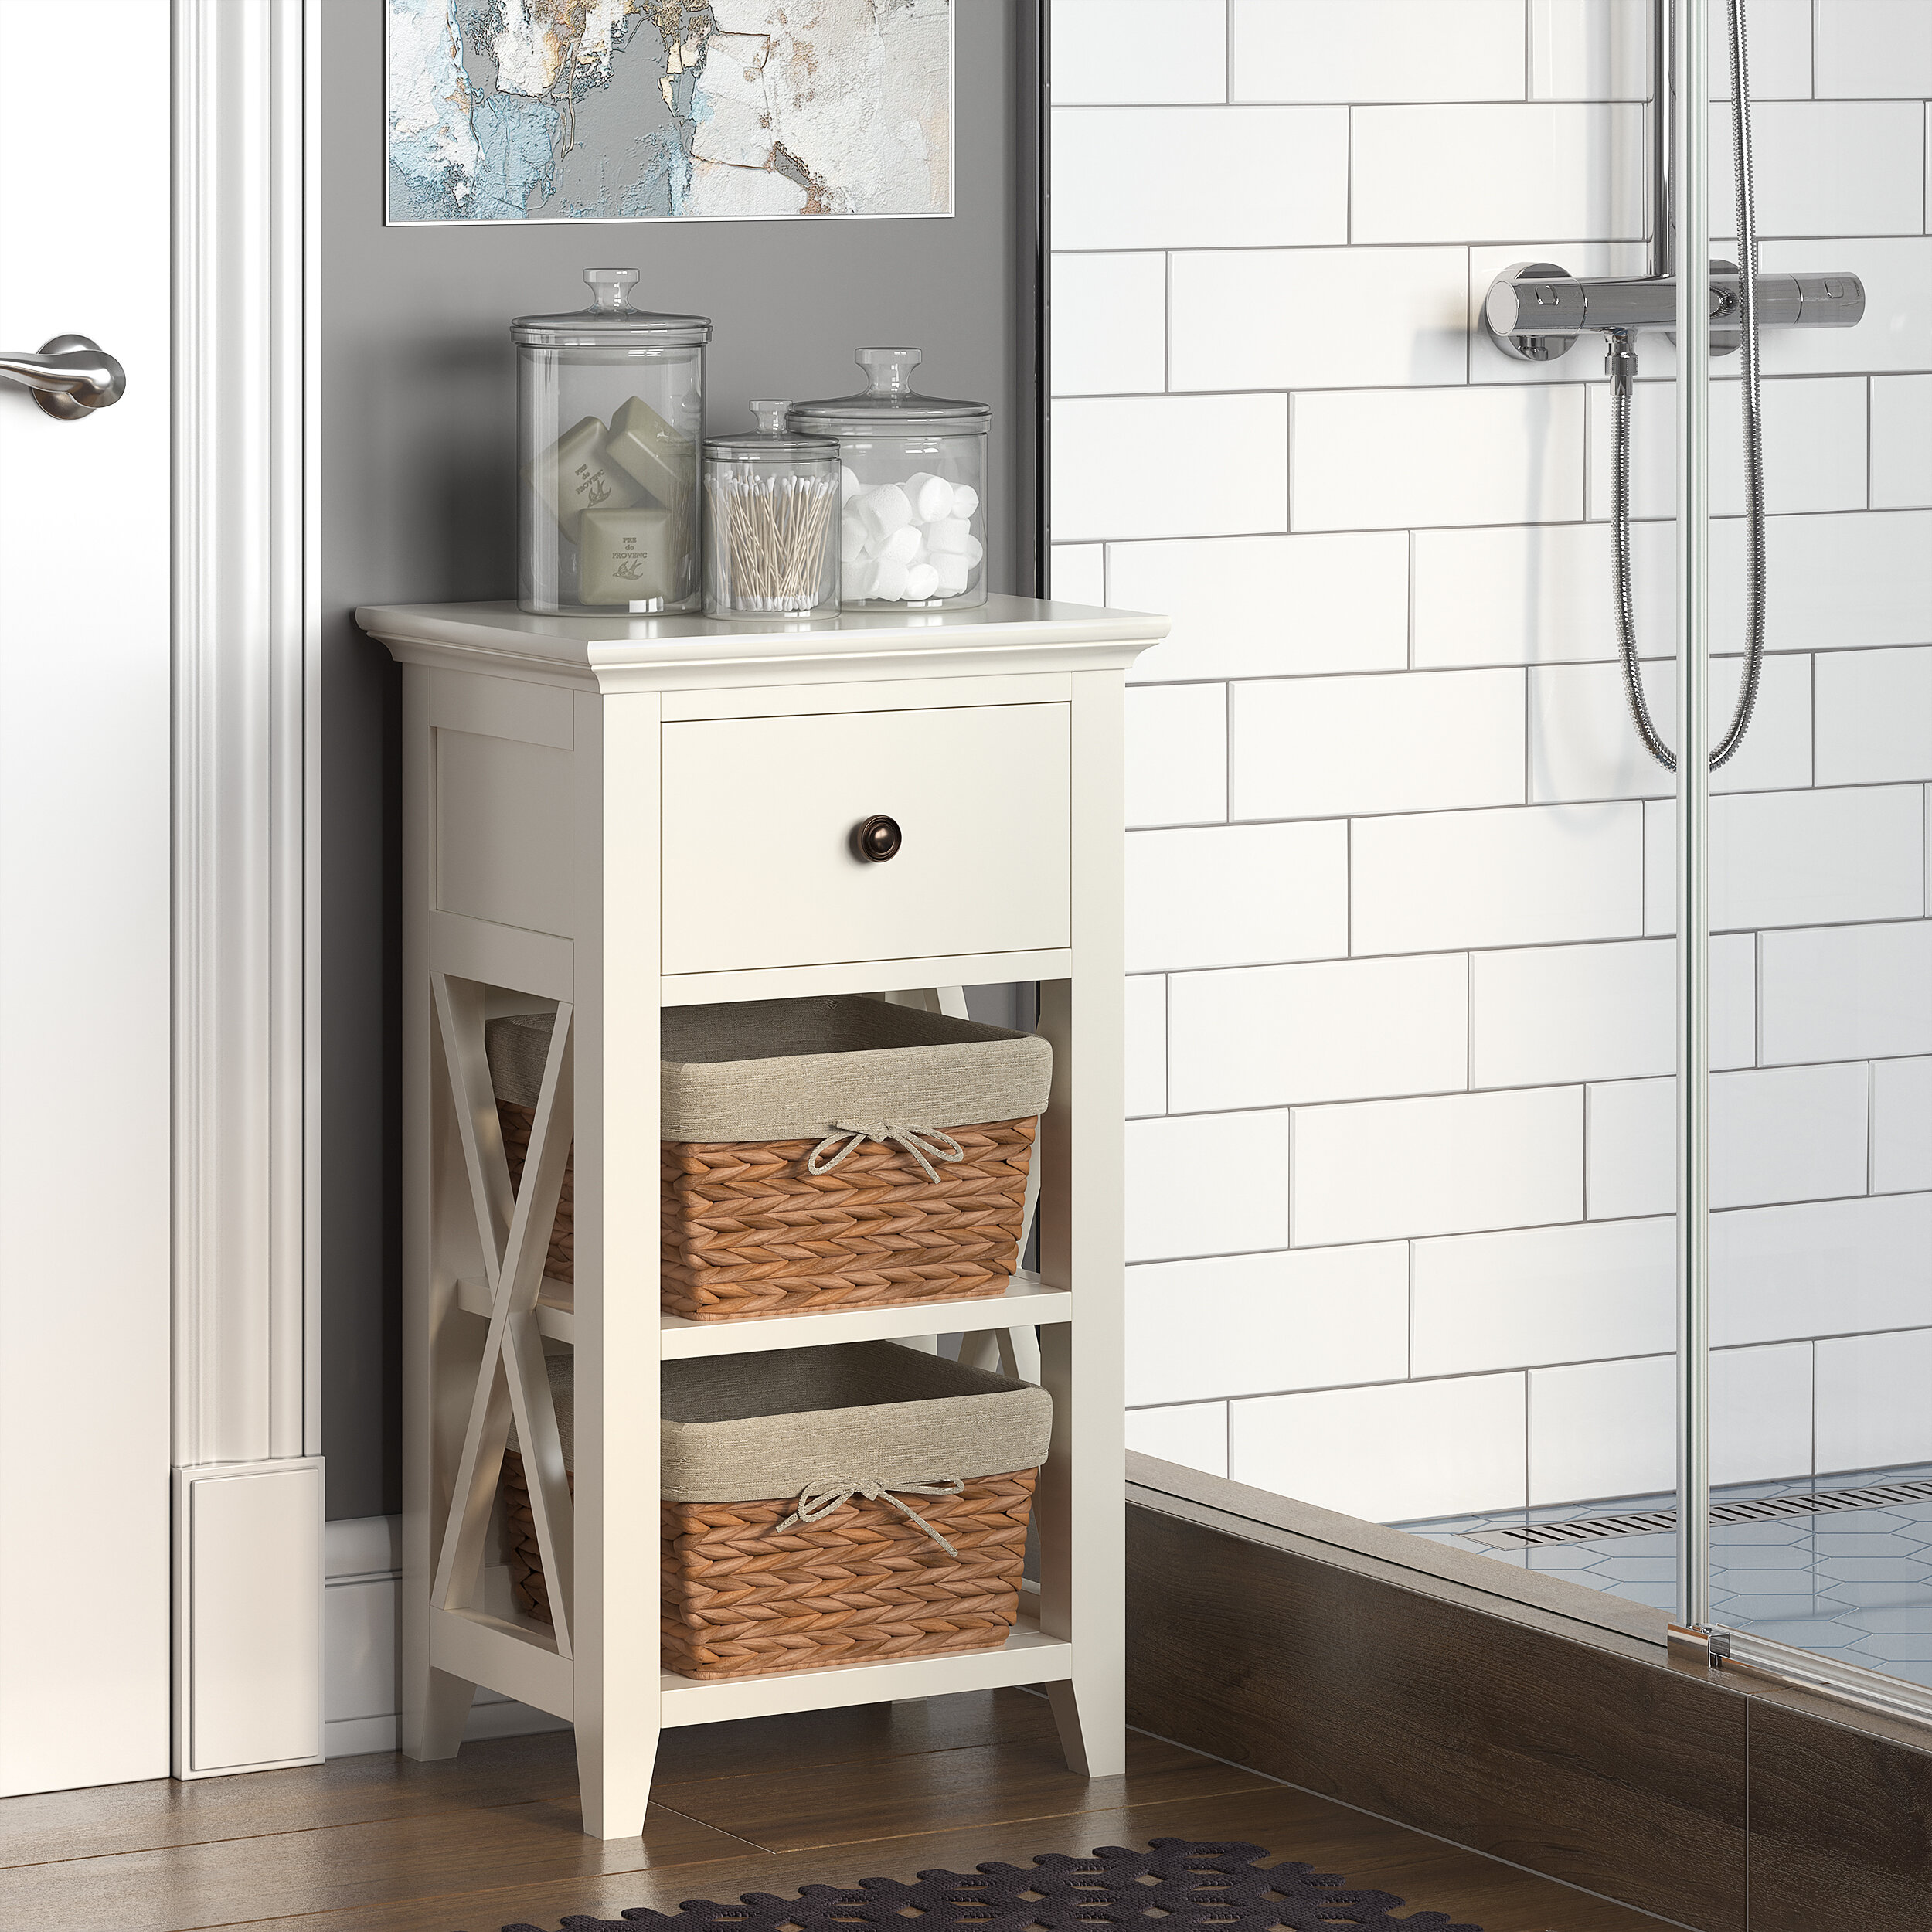 Bathroom shelves for extra storage – House Mix